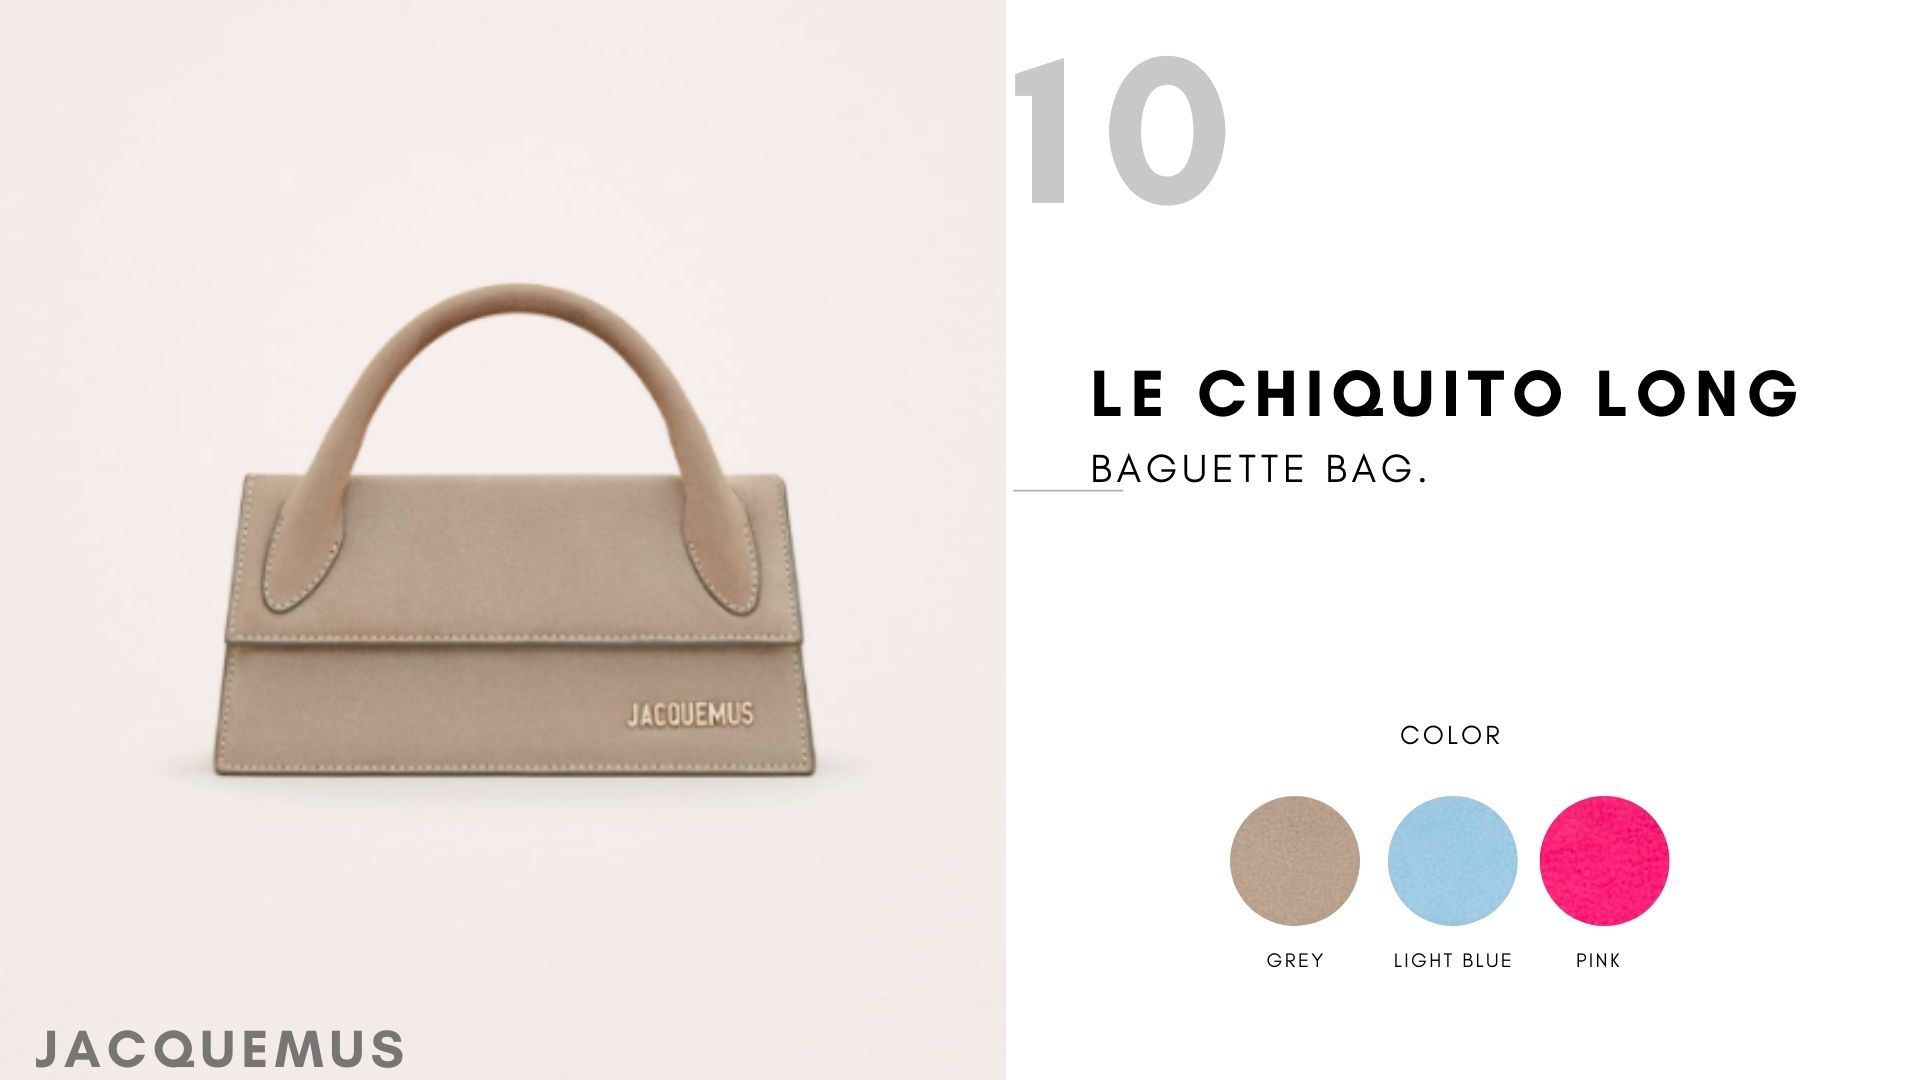 Le Chiquito long Baguette bag.